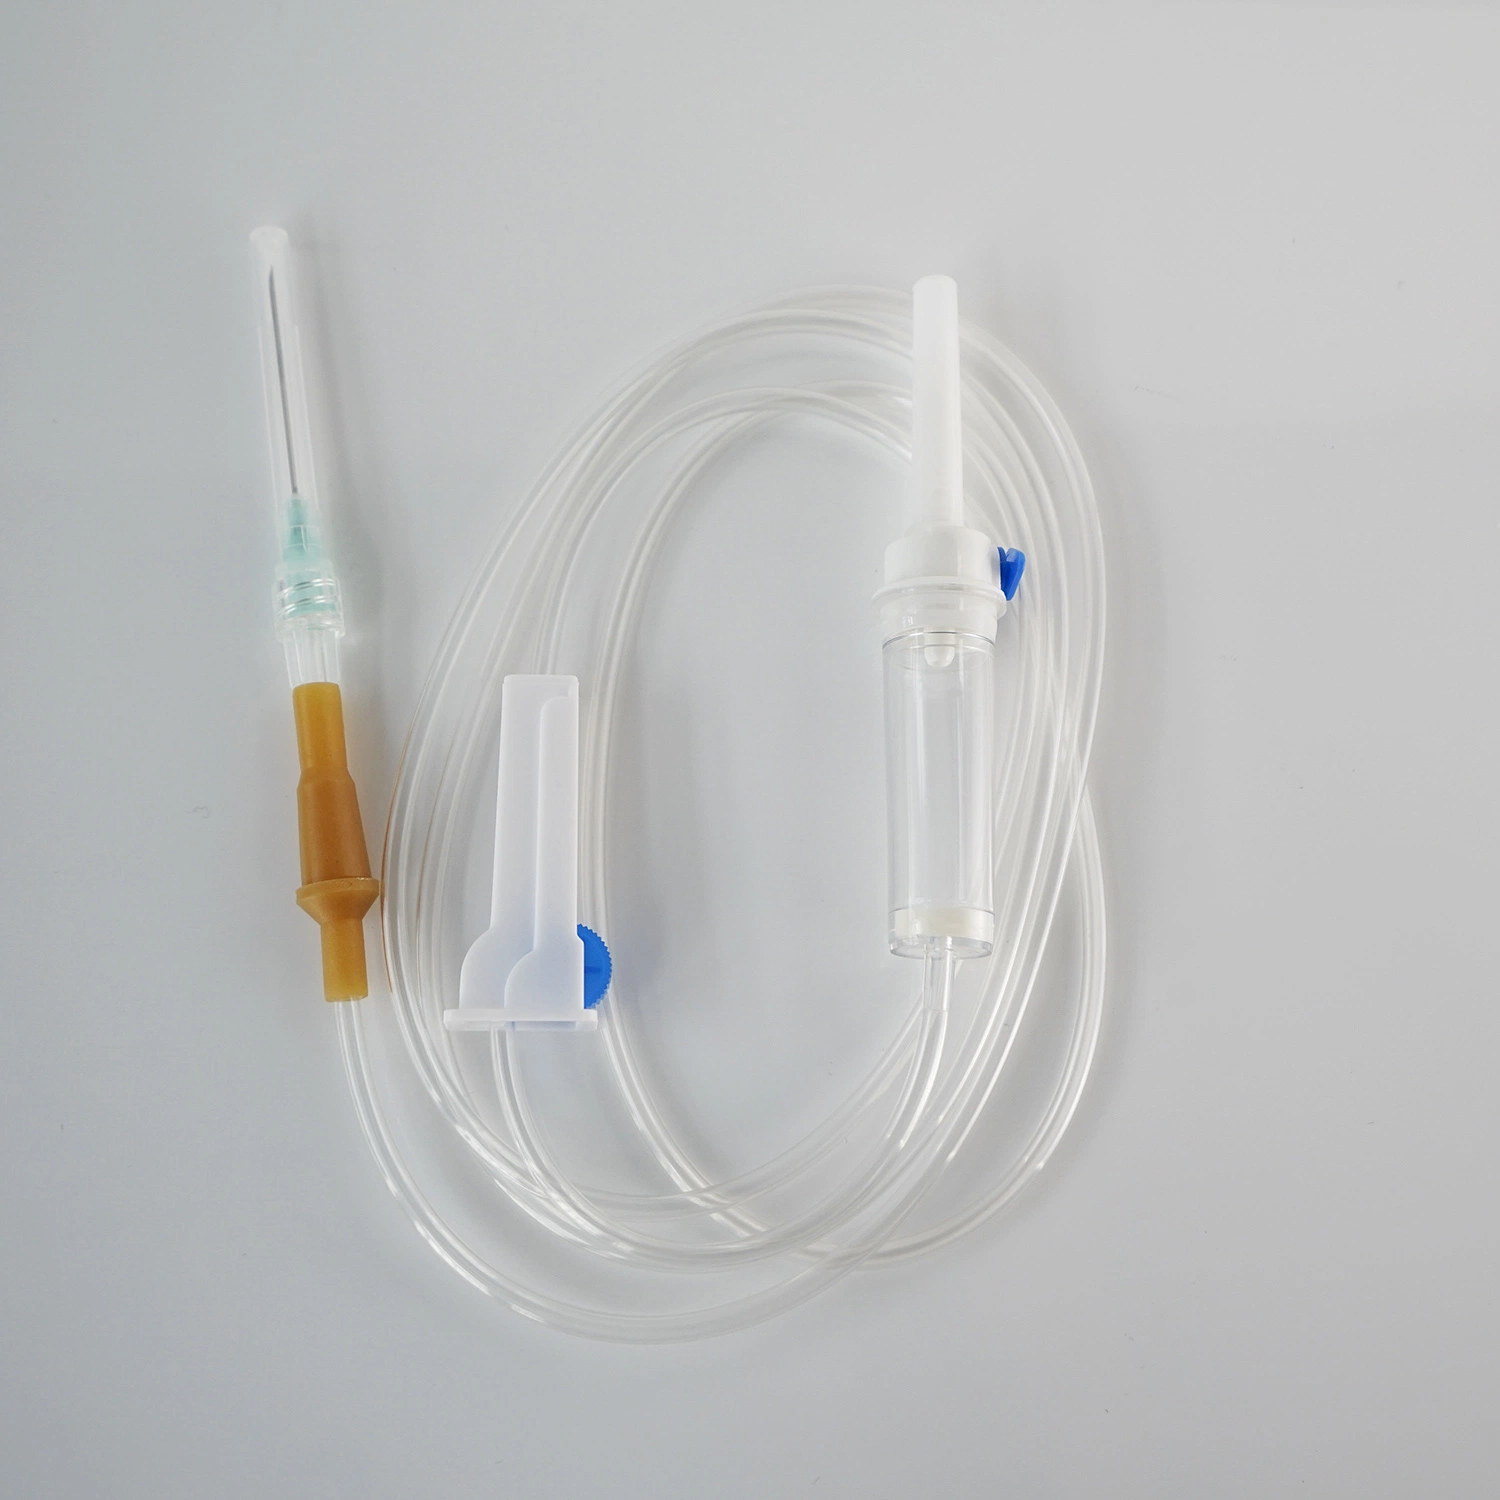 Sterilisierte medizinische Geräte IV für Erwachsene, chirurgische medizinische Geräte IV, Einmalgebrauch Infusionsleitung mit Luer-Schlupfverschluss für tragbare Infusion Geräteburett Einstellen